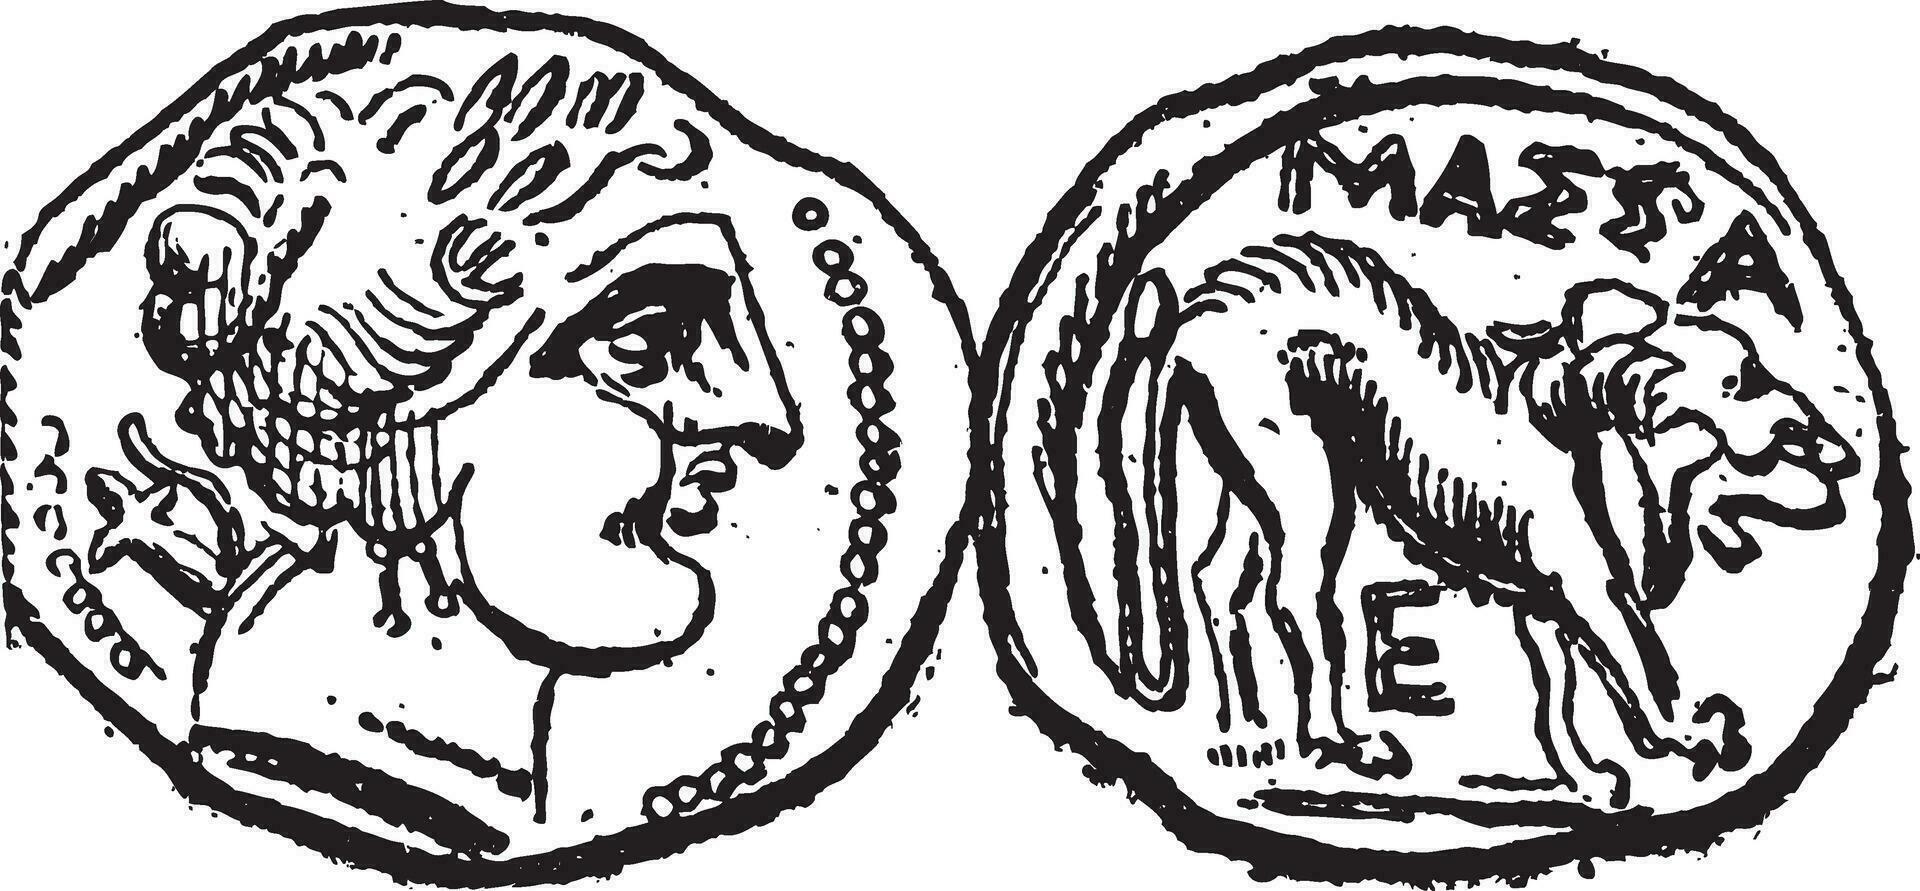 oude keltisch drachme munt, wijnoogst gravure vector